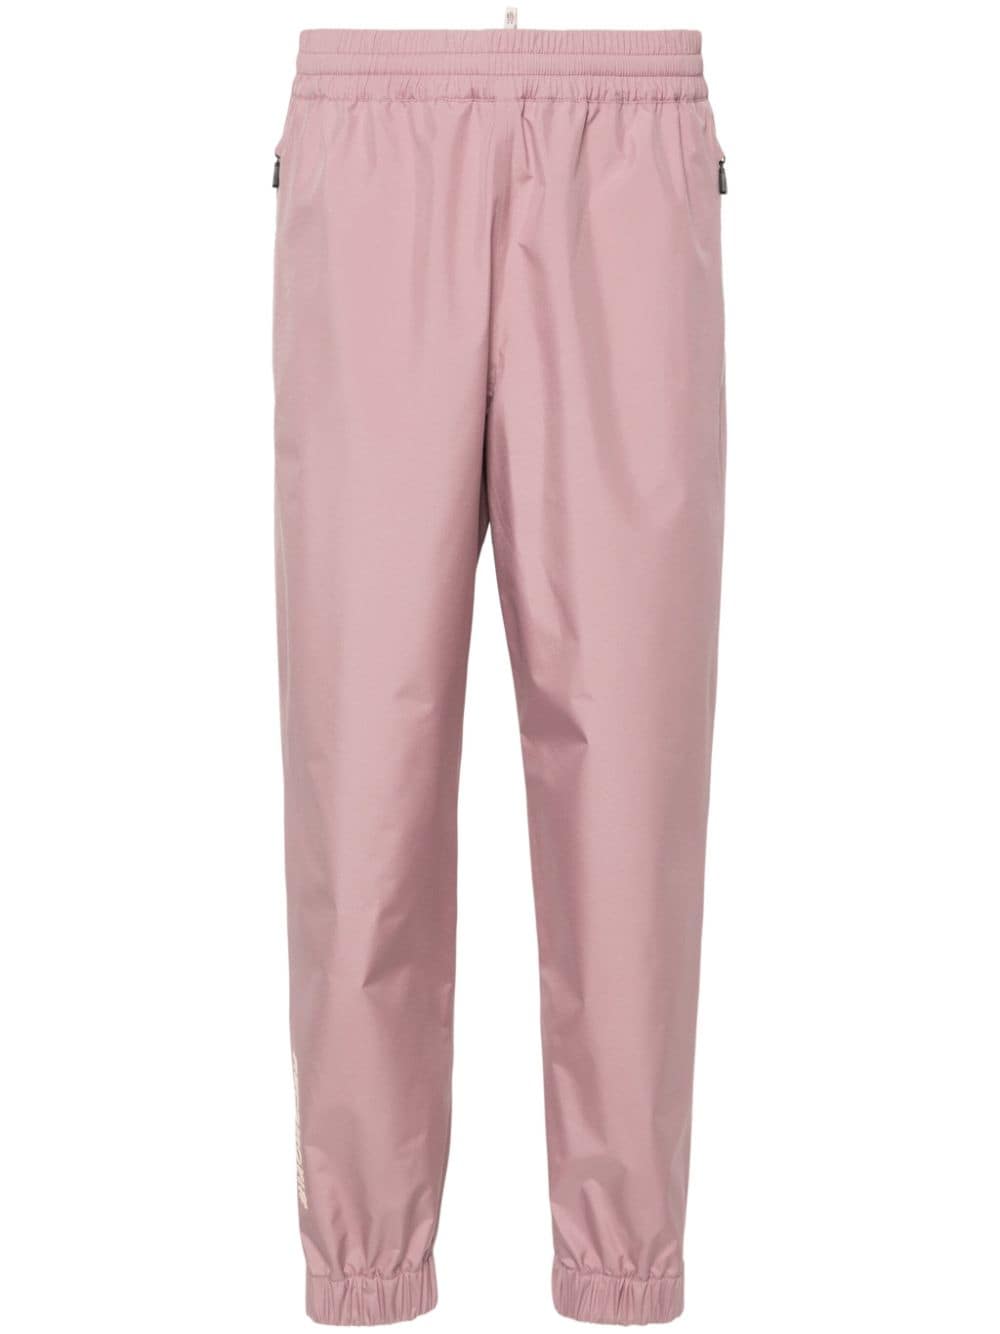 Pantaloni rosa in Gore-Tex<br> Collezione Moncler Grenoble